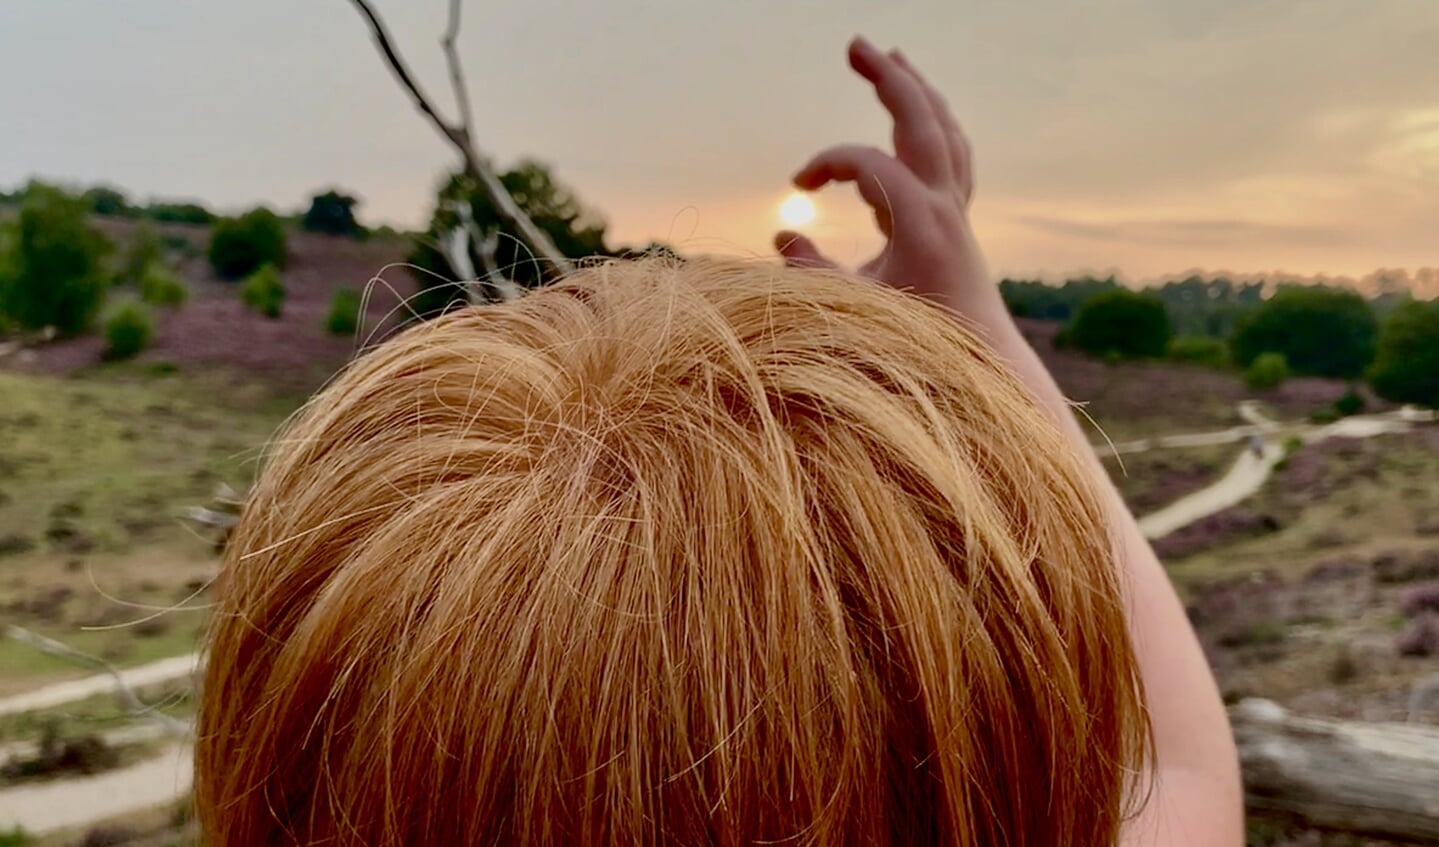 De foto is gemaakt op zaterdag 15 augustus op de Posbank. ,,
Ons zoontje Siebe wil de zon proberen te pakken tijdens onze avondwandeling waarbij we hebben genoten van de hei die zo prachtig in bloei staat!